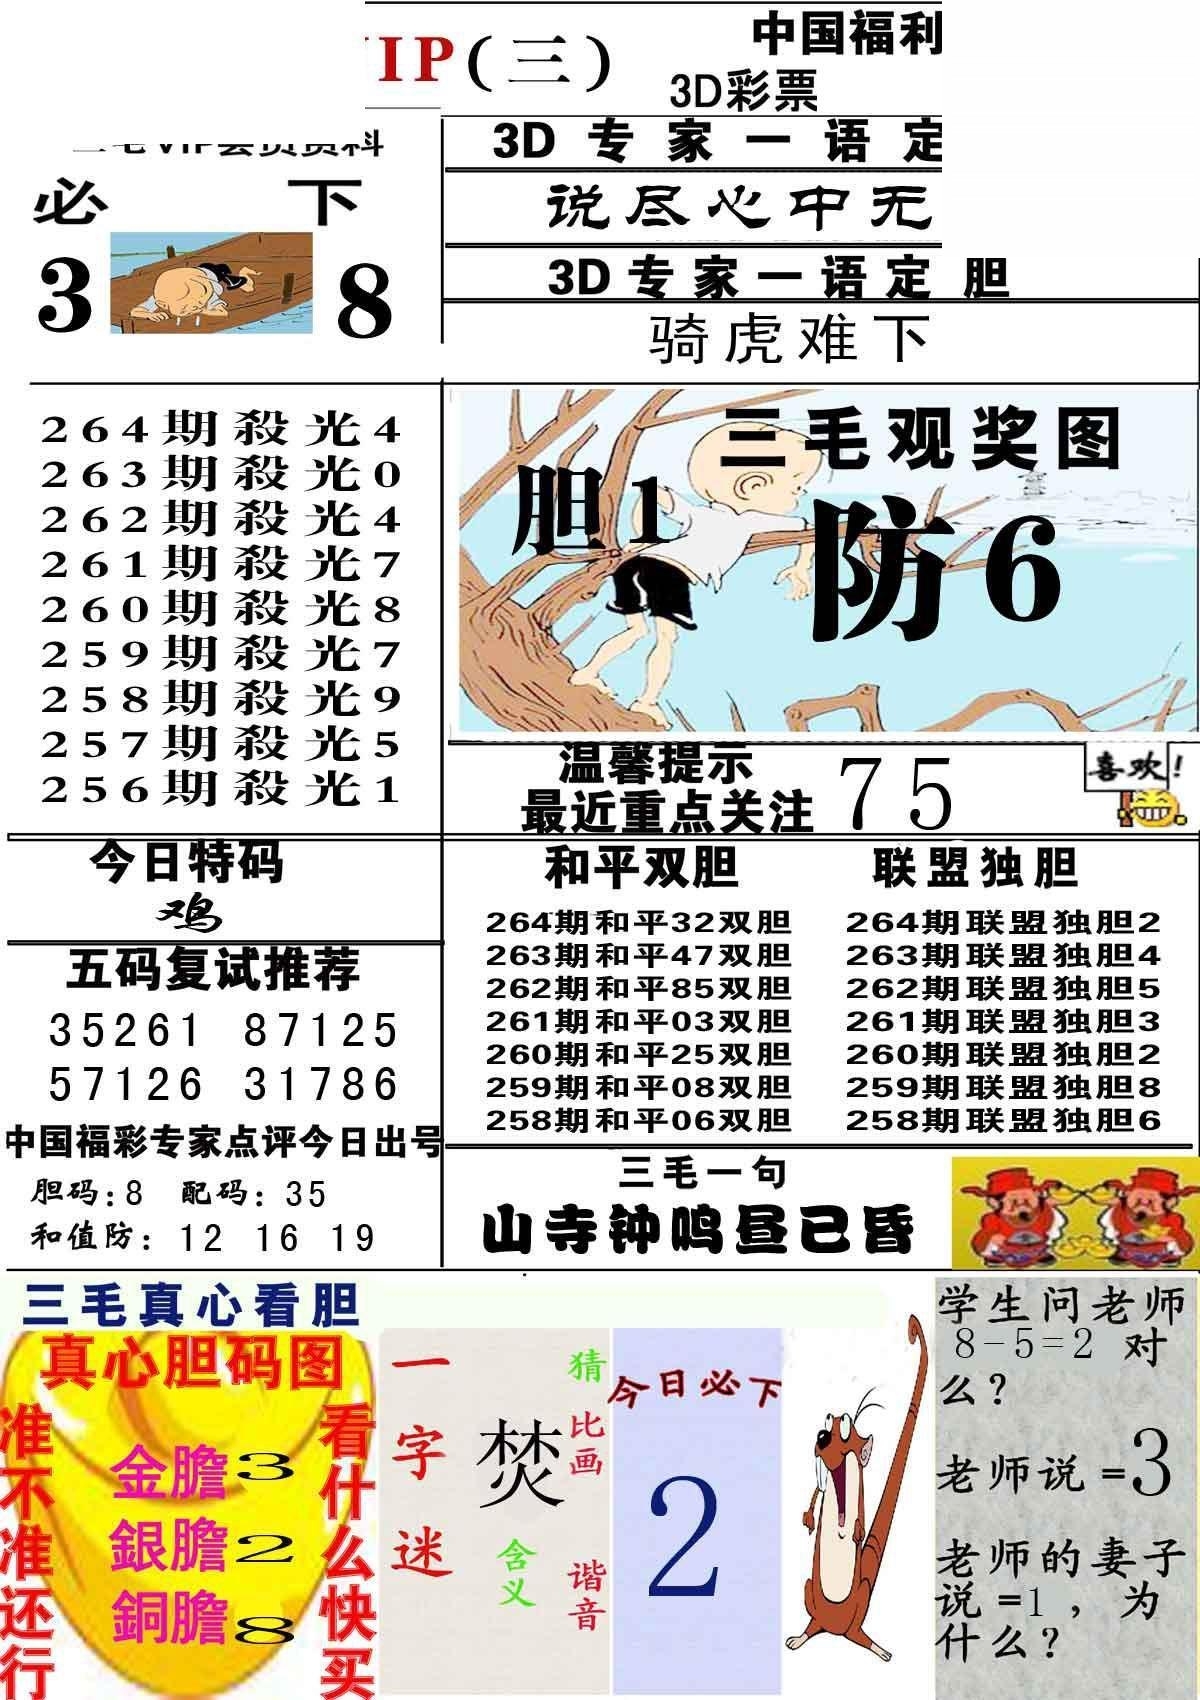 20264期福彩3d图谜 三毛图版 - 3d图库 - 为彩网 - 微